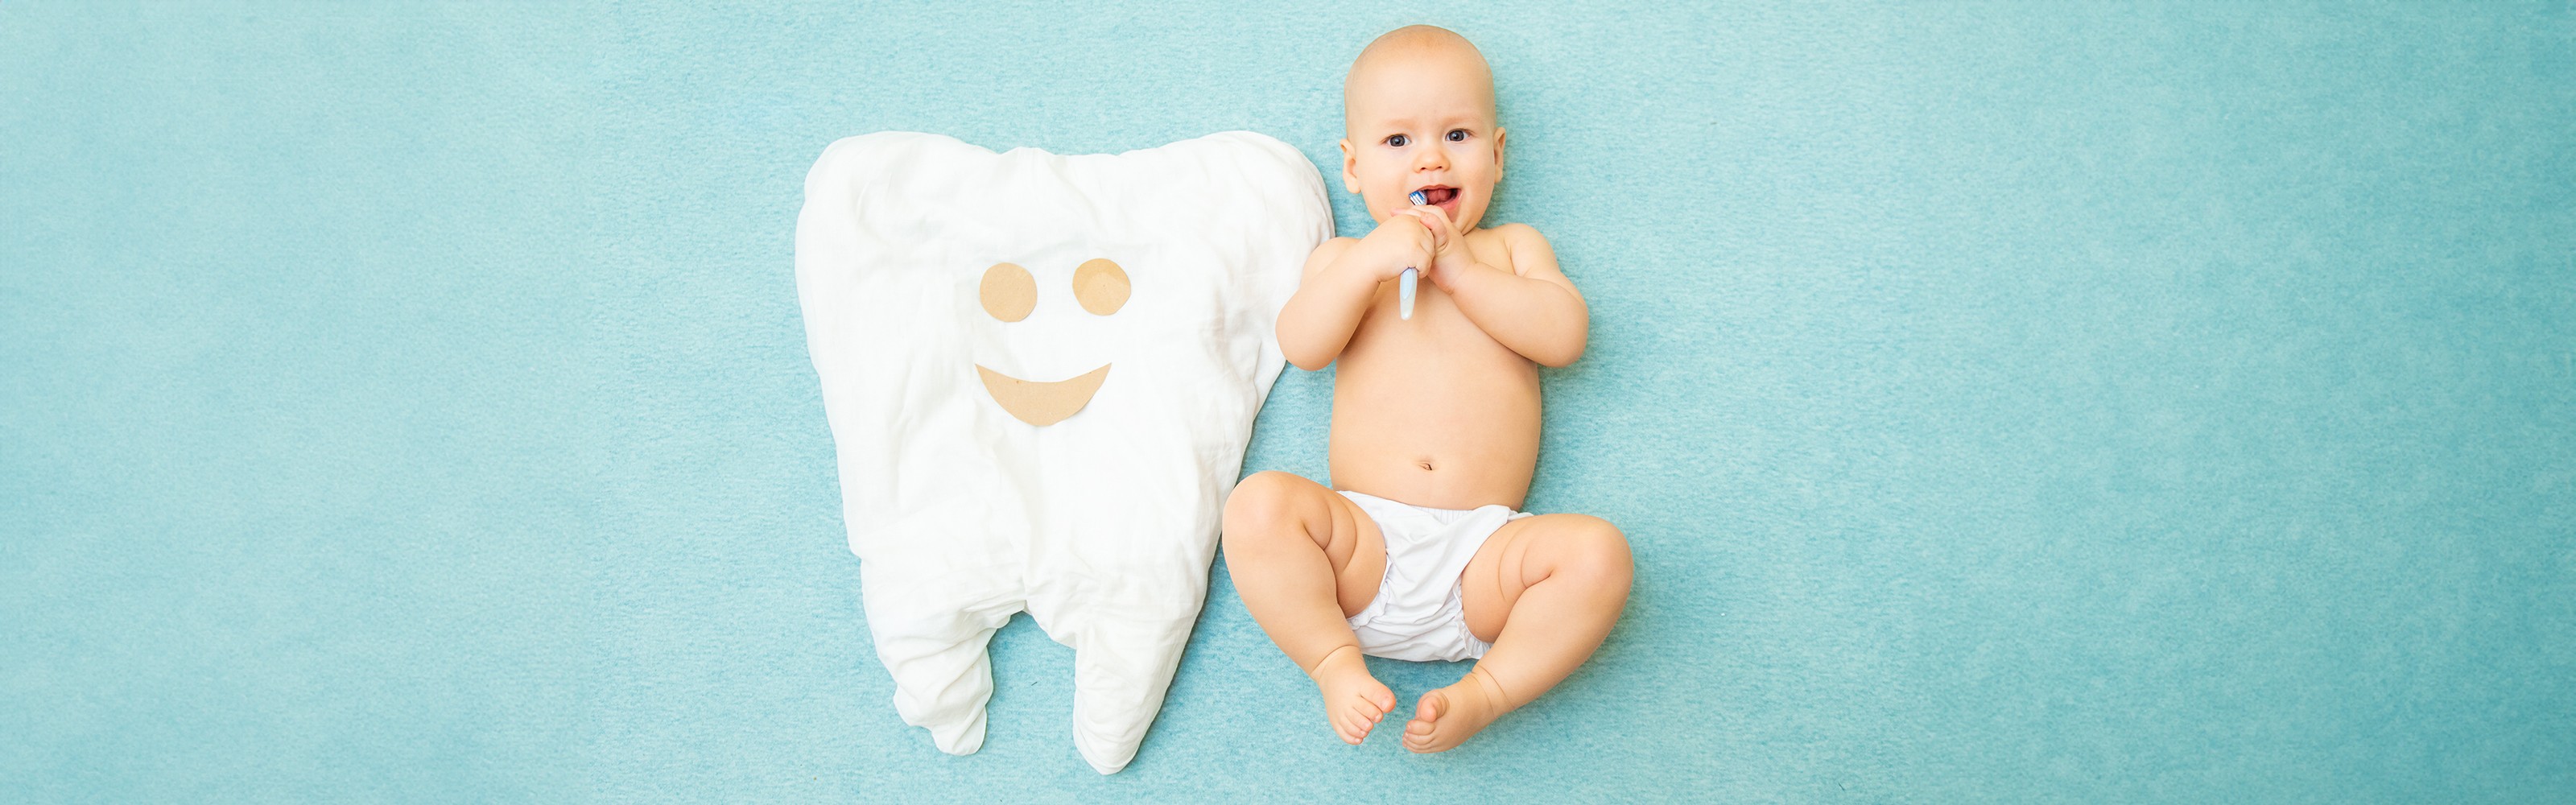 Bebek Ağız ve Diş Sağlığı: Doğal Ürünlerle Nasıl Korunur?